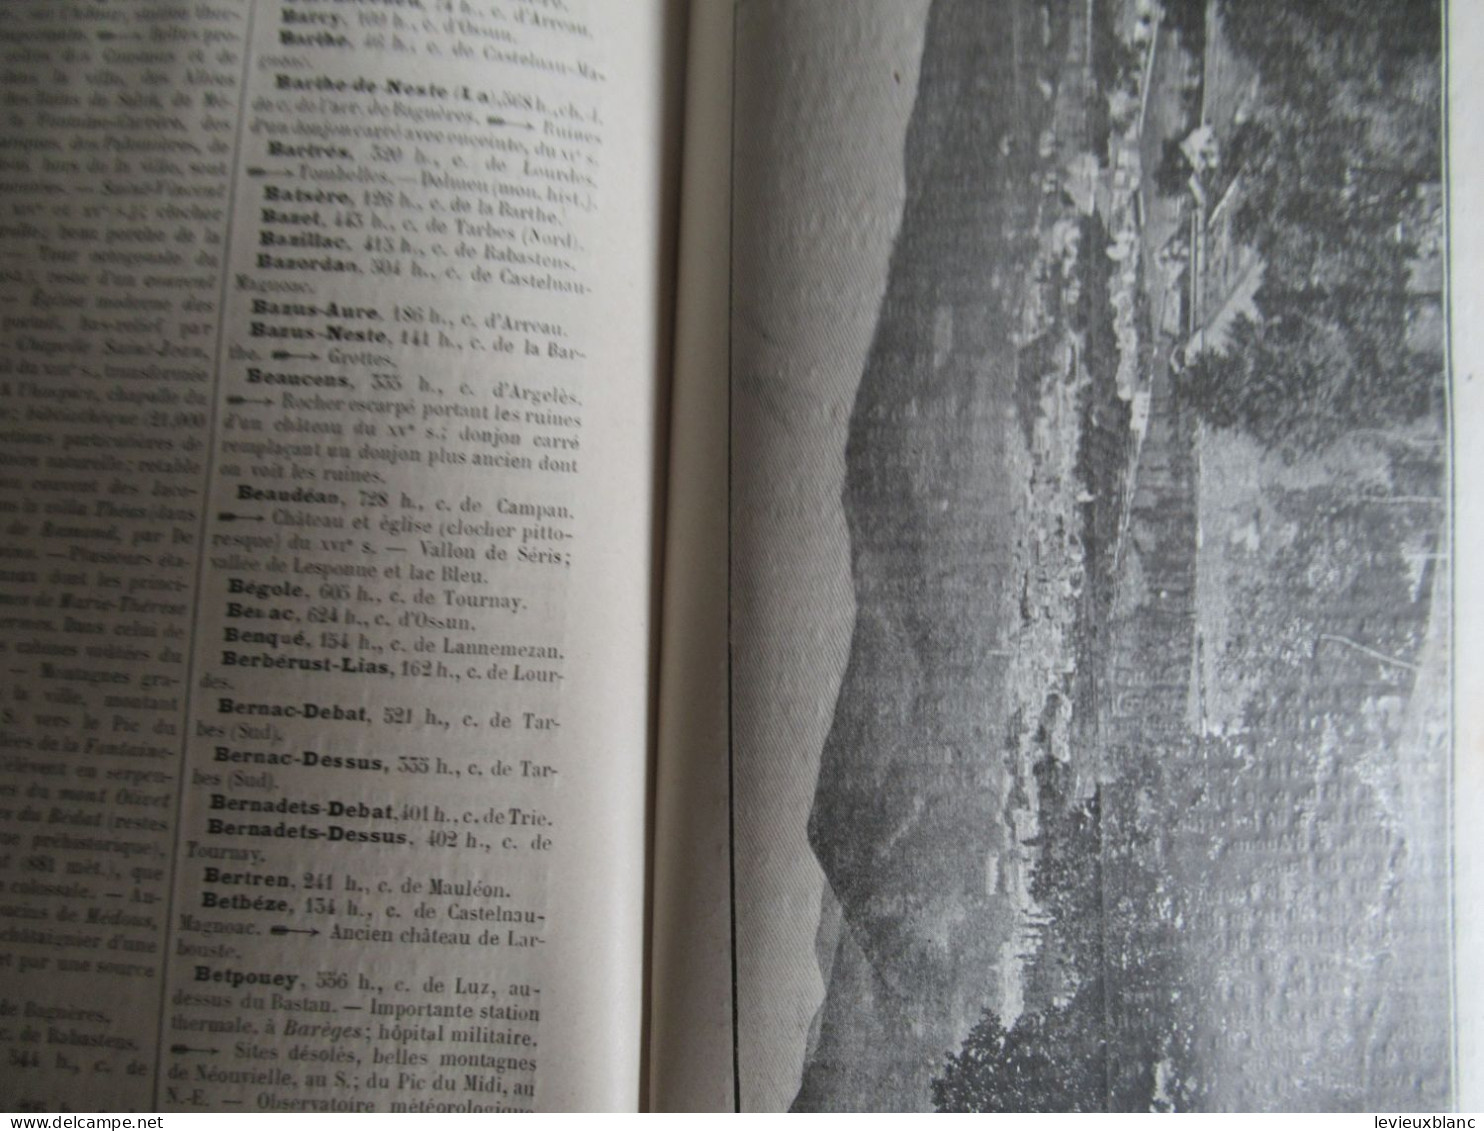 Petit fascicule de géographie/ " Hautes Pyrénées " / 7éme édition / Alfred Joanne / Hachette & Cie /1903      PGC550